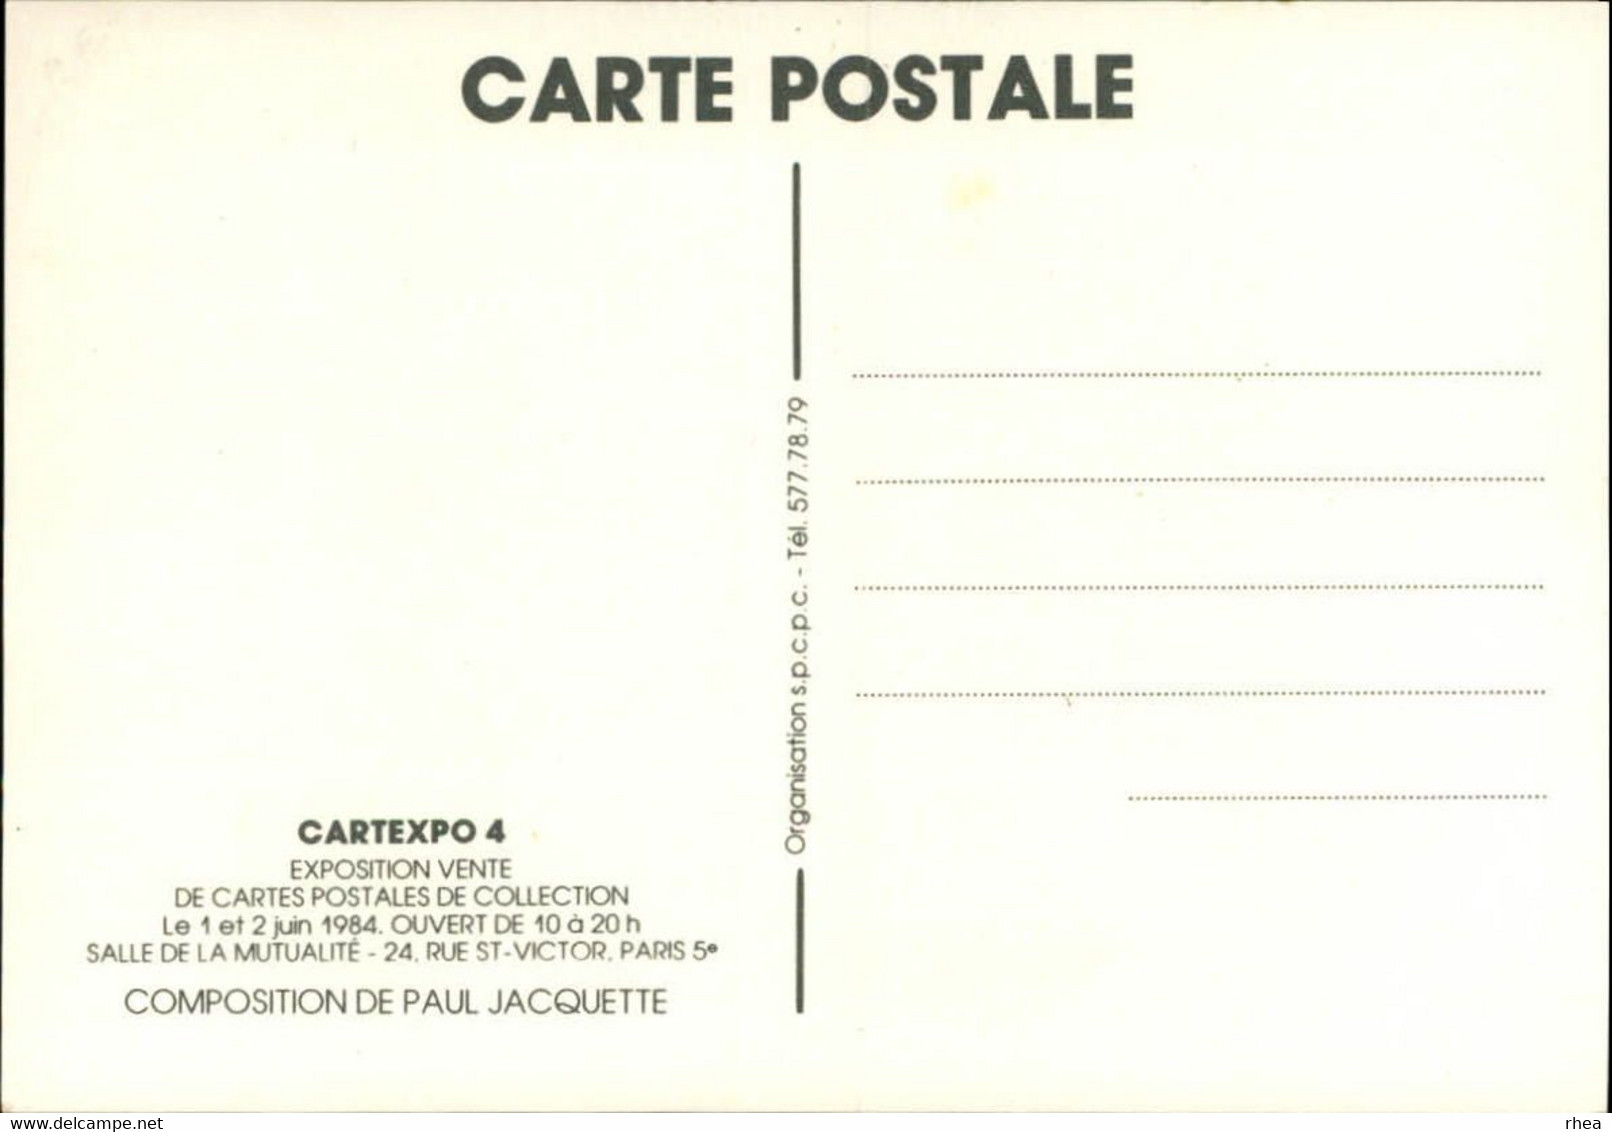 SALONS DE COLLECTIONS - Salon De Cartes Postales - Paris - Cartexpo - Dessin De Jacquette - 1984 - Bourses & Salons De Collections